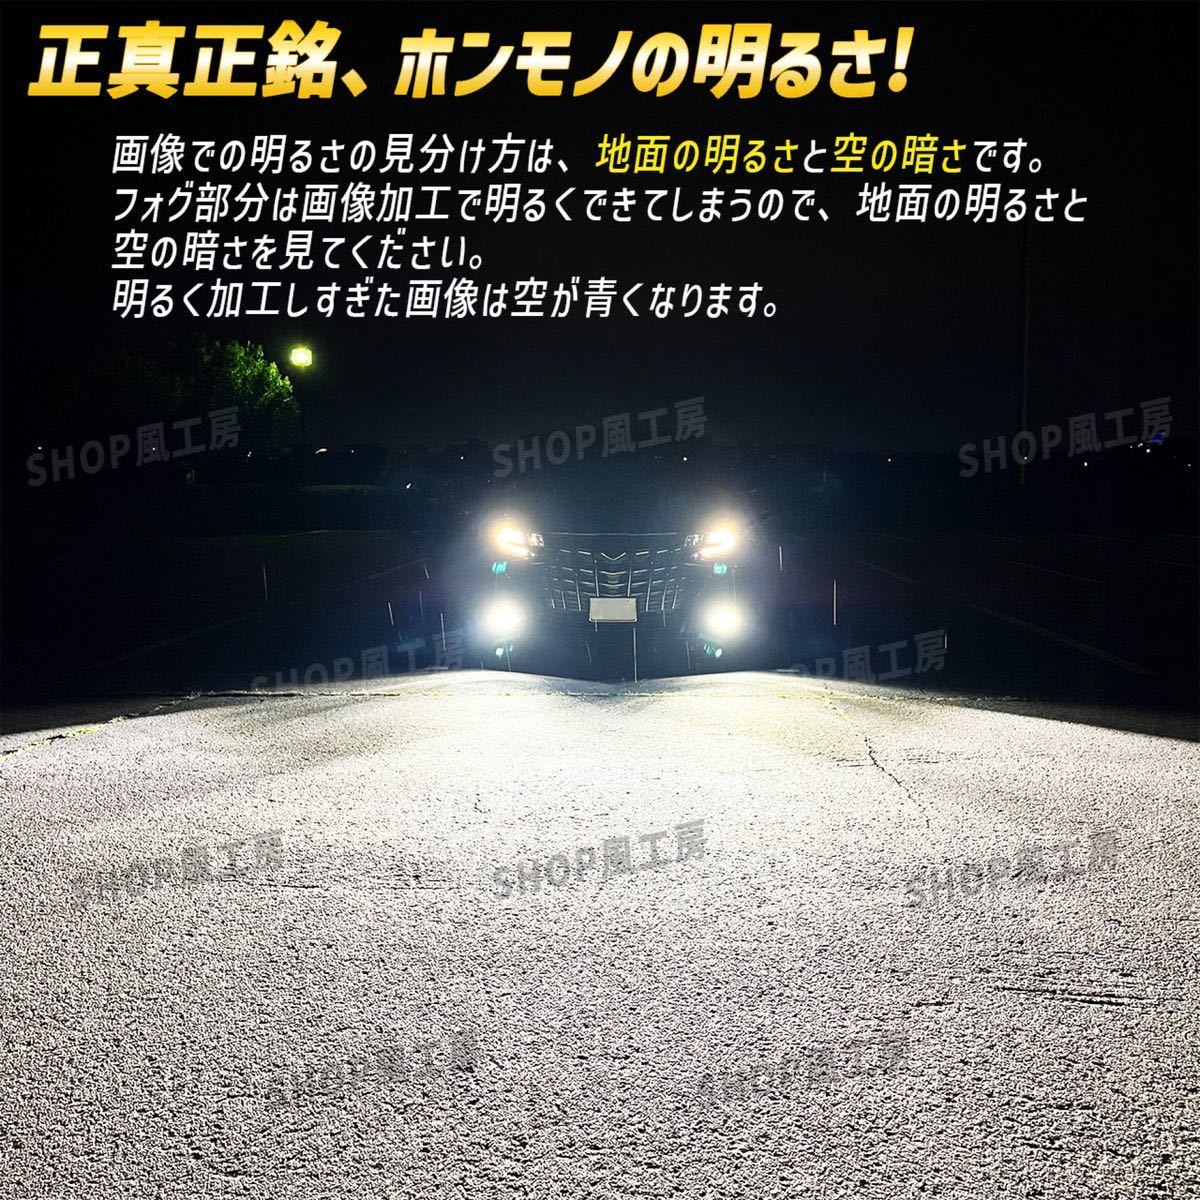 NUTSLAMP 車 ライト ヘッドライト ハイビーム HB3 LED オトナホワイト HID超え 超明るい 爆光 白色